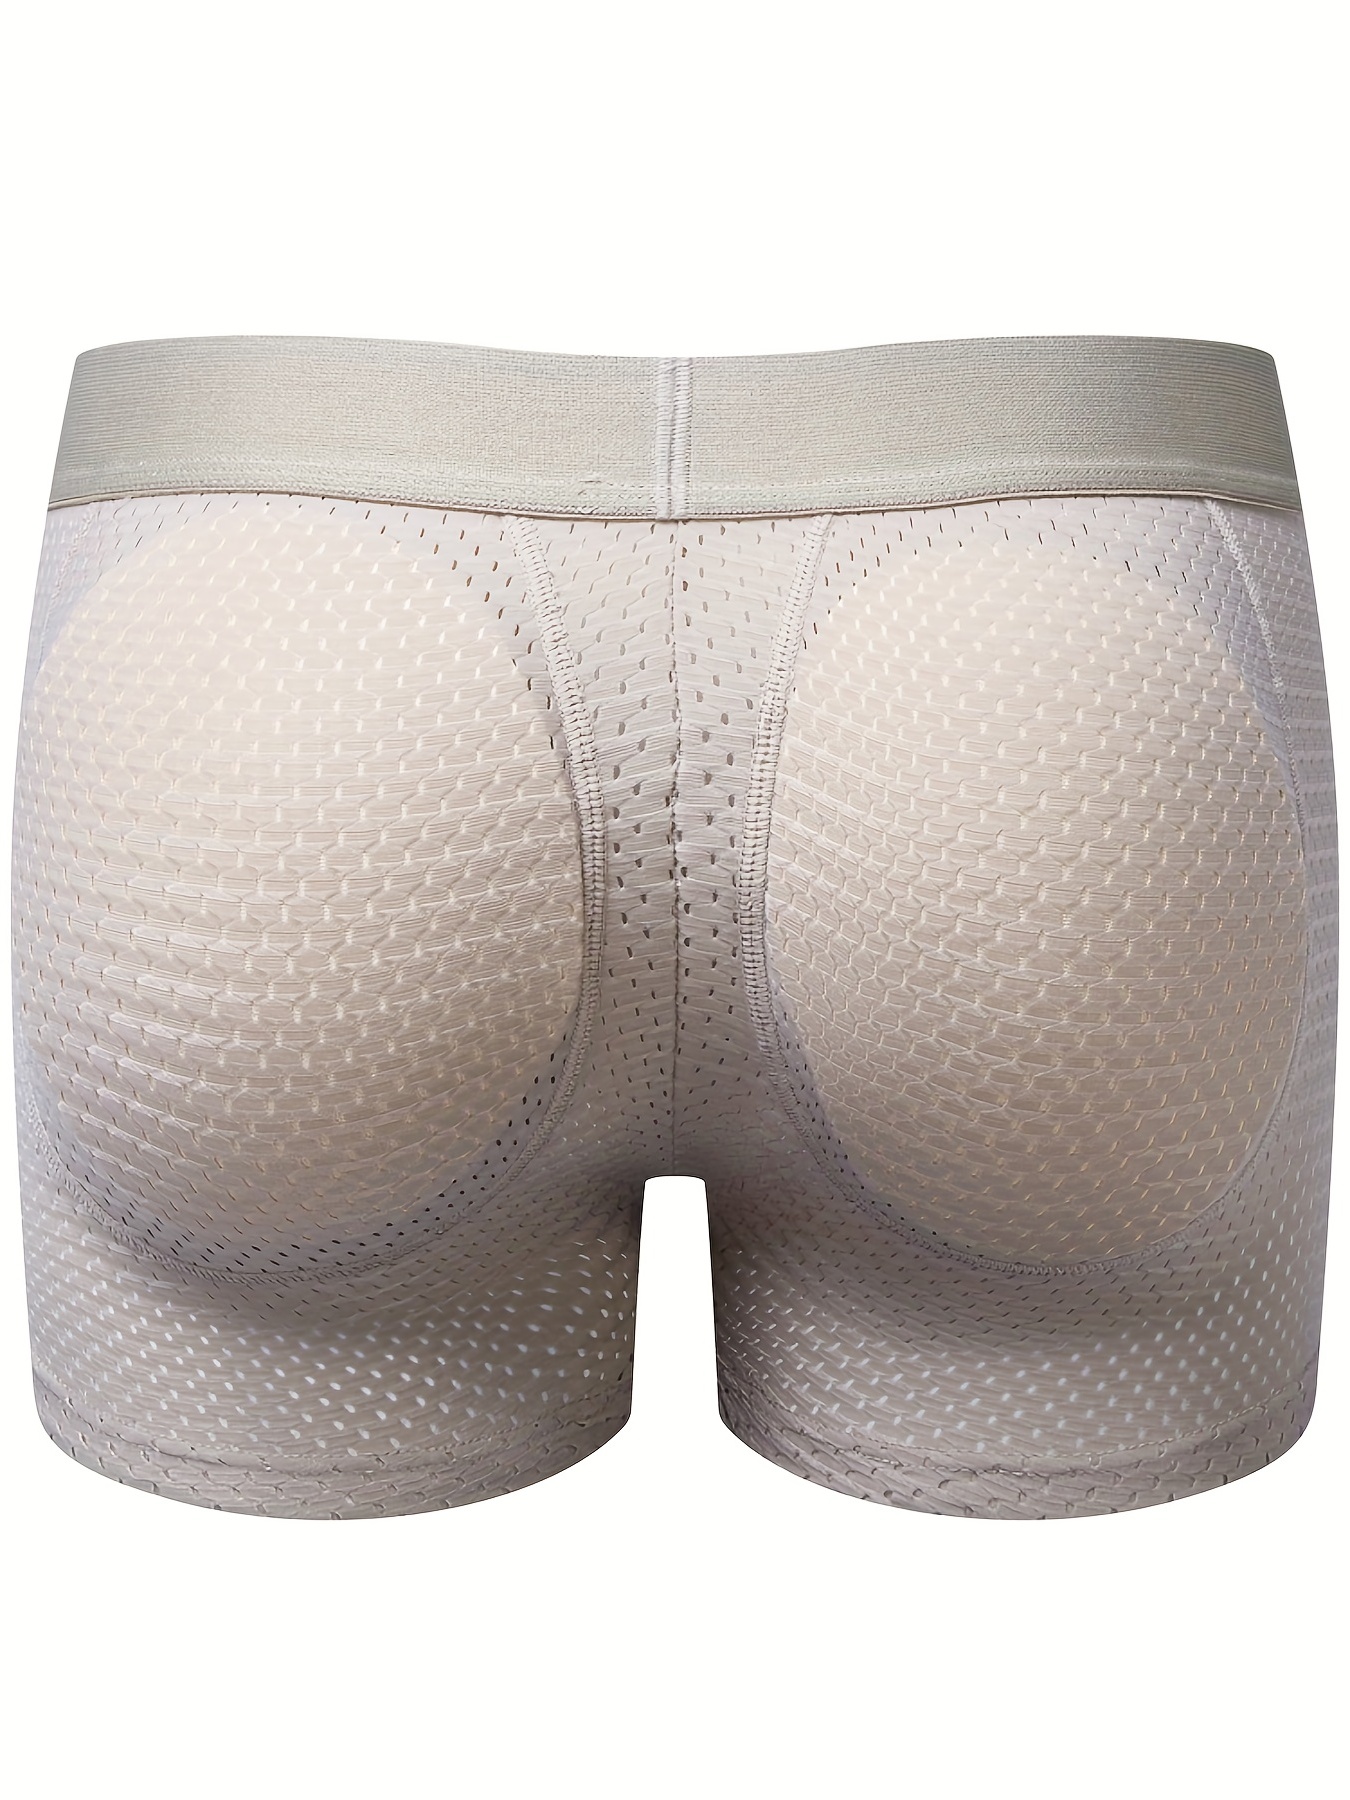 Mesh ice silk underwear (sports underwear/unisex underwear/flat